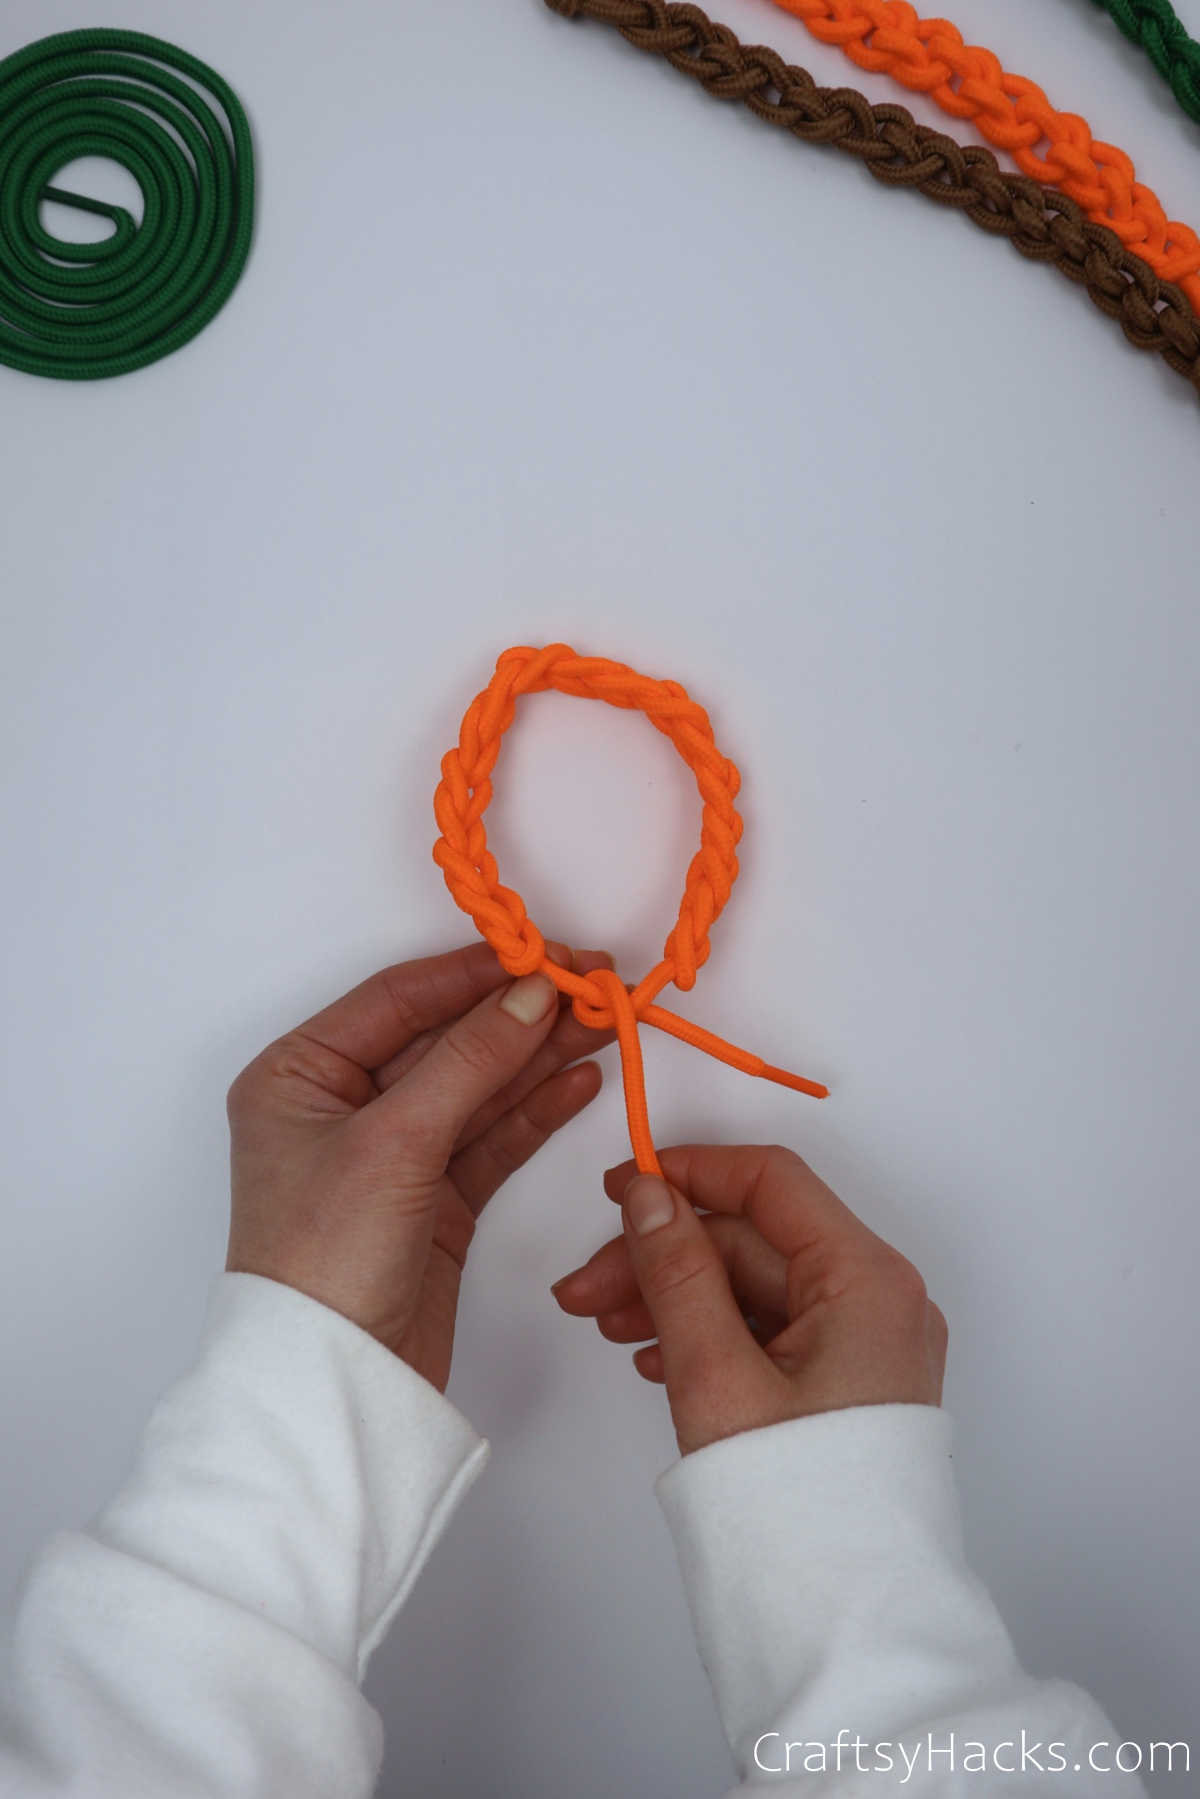 tying knot in bracelet end